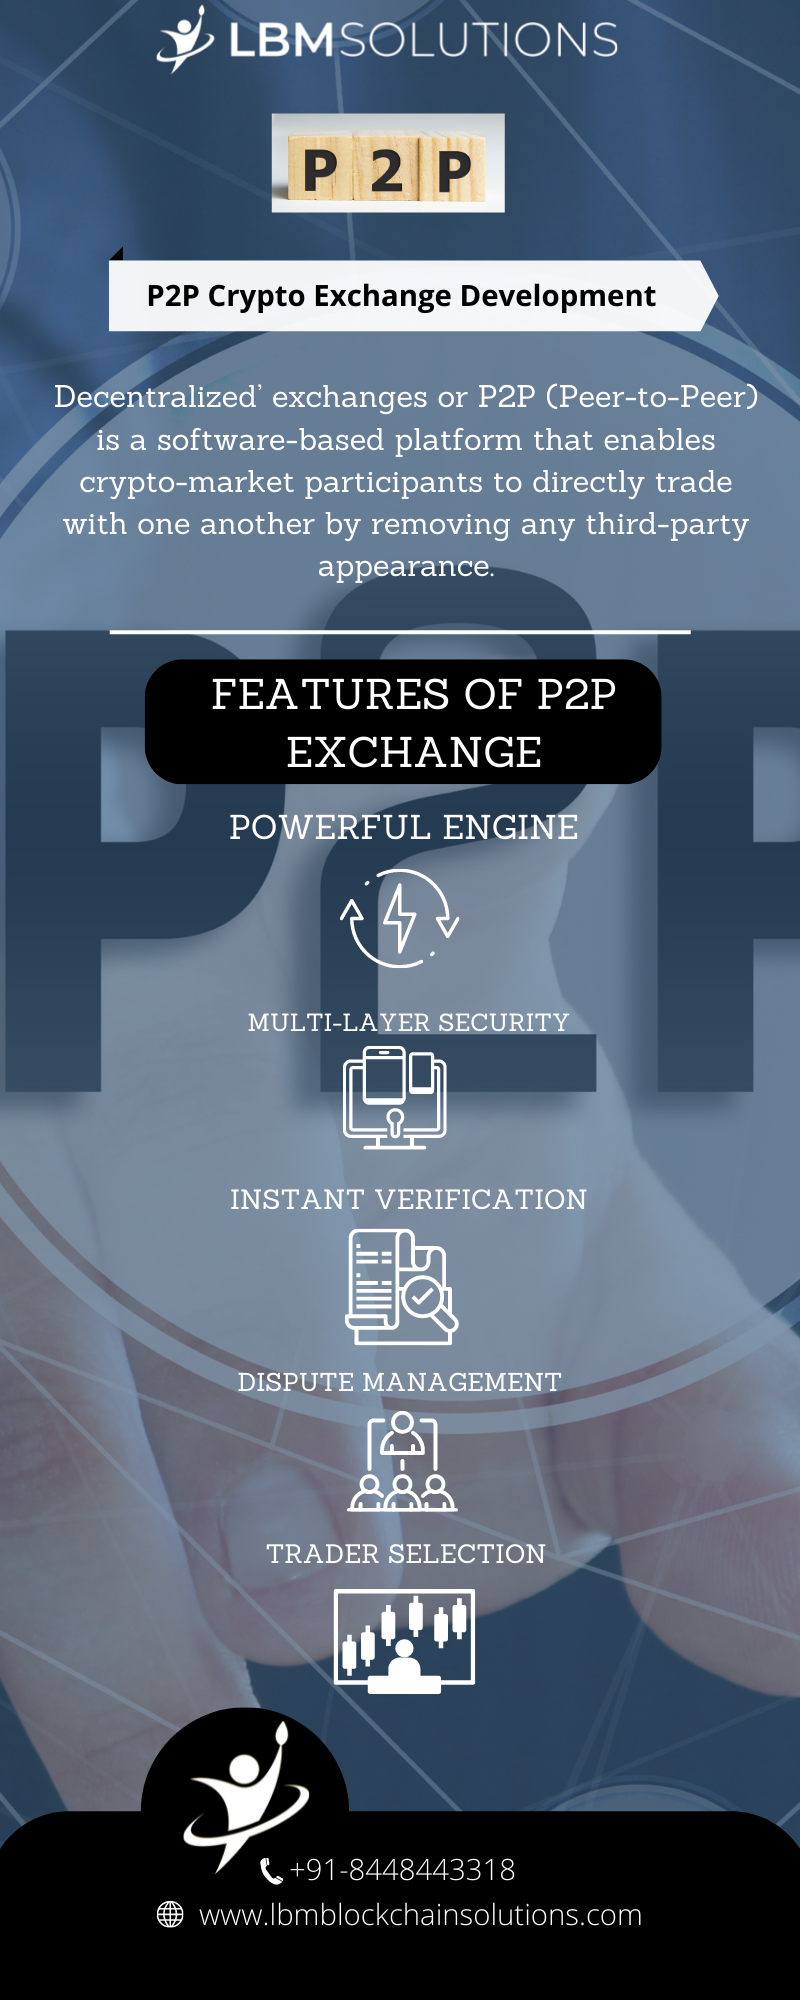 FEATURES OF P2P
EXCHANGE

7 CC +91-8448443318
@& www lbmbloc solutions.com